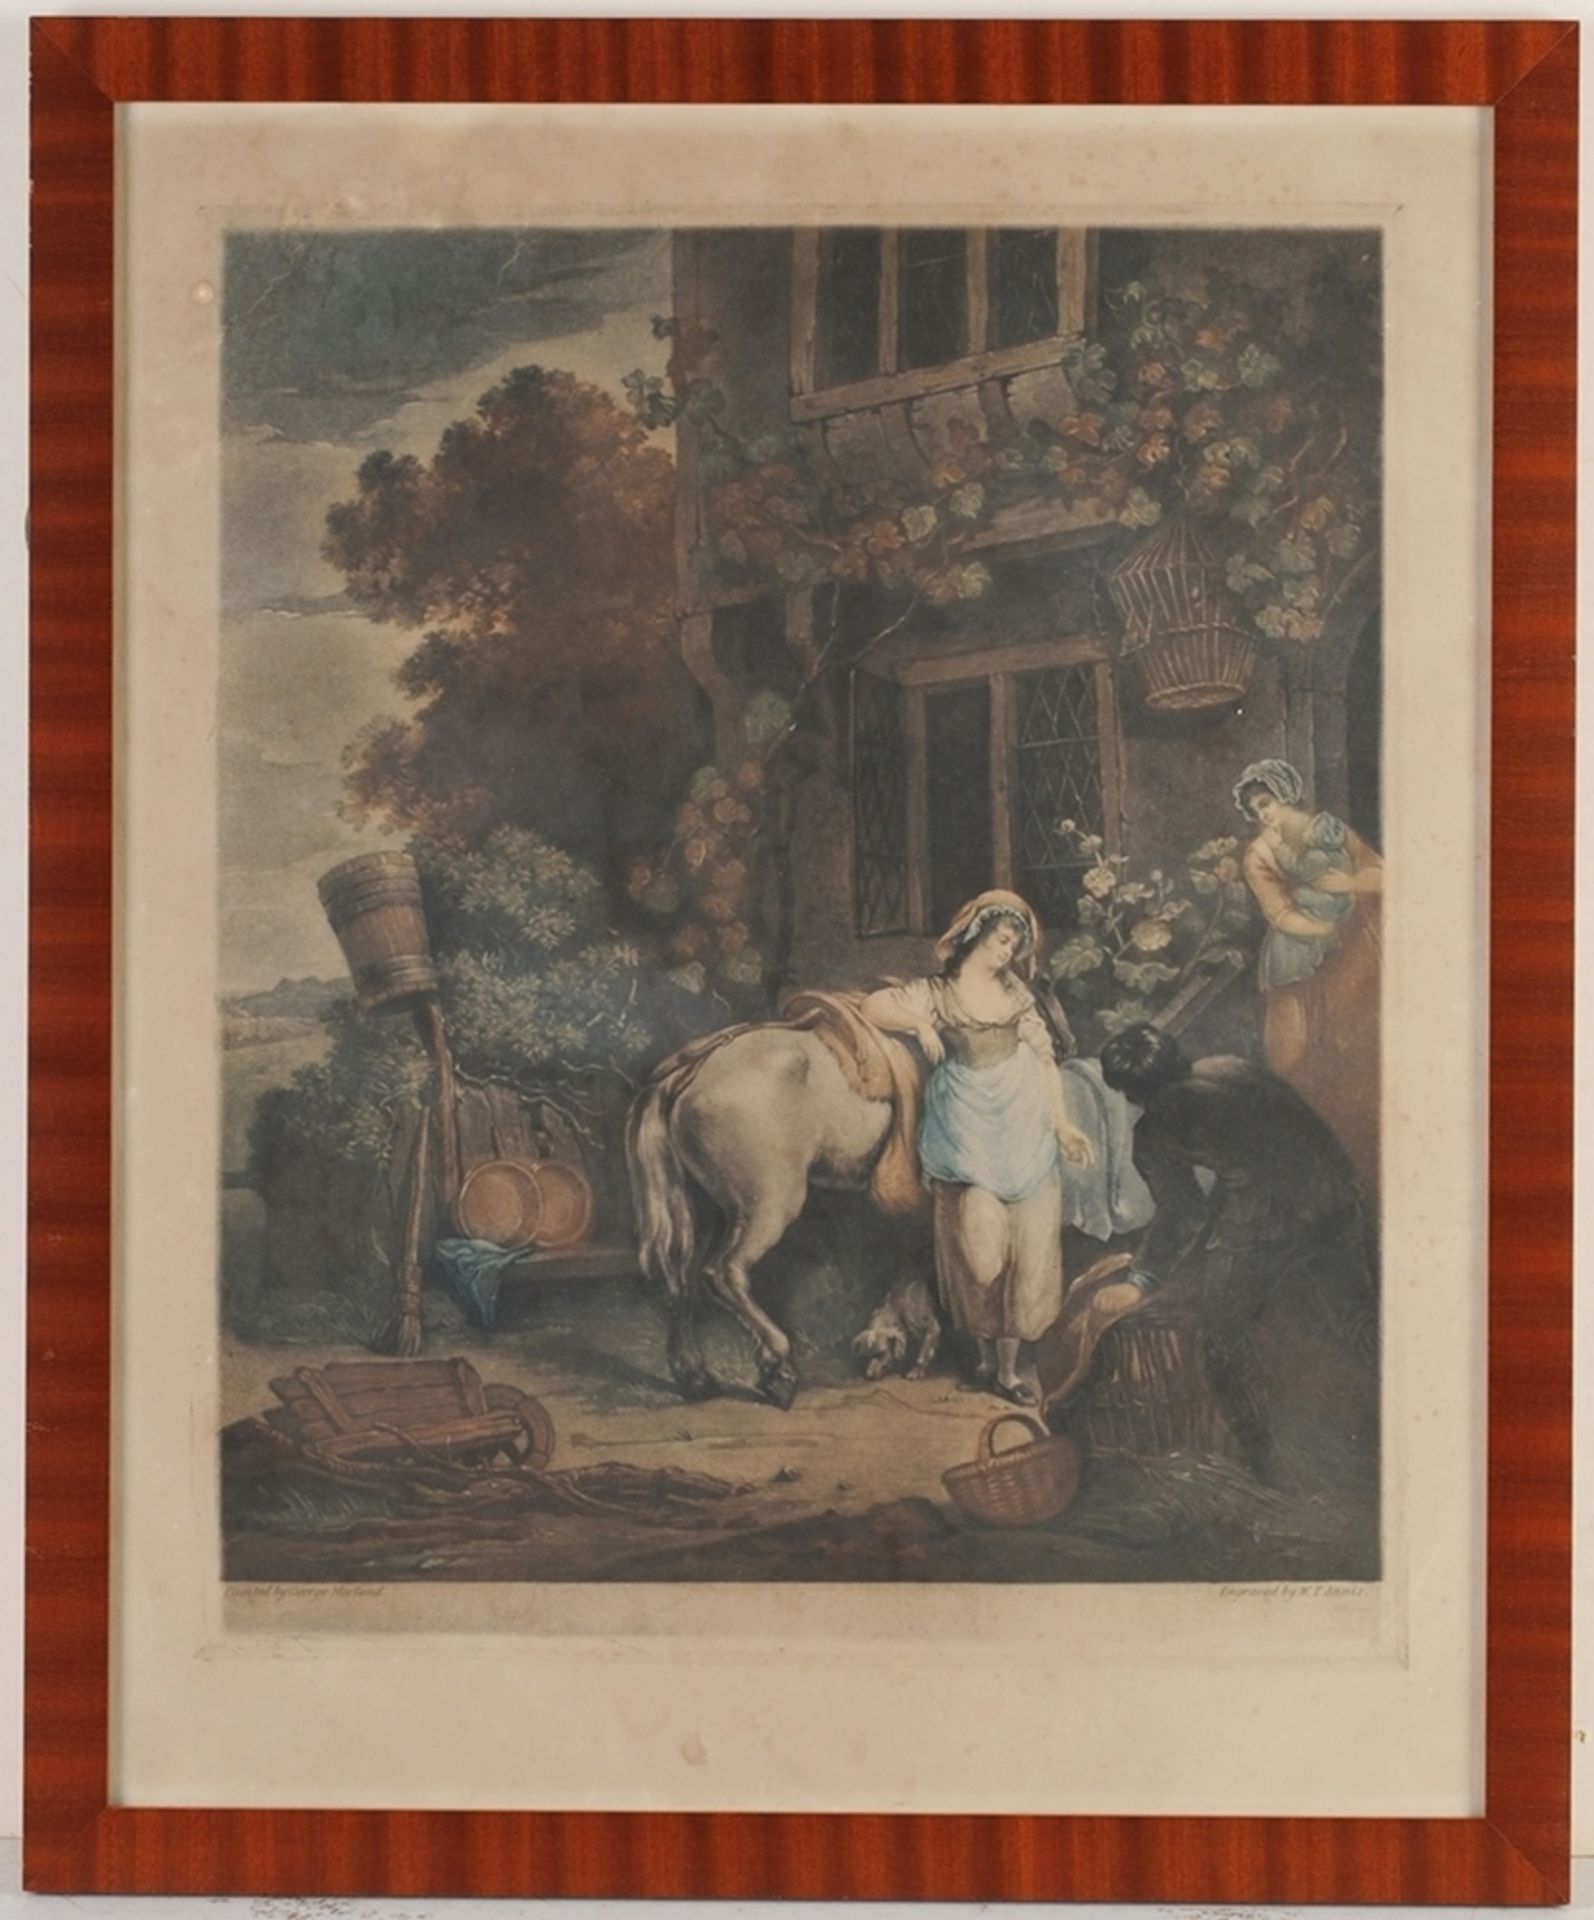 Annis, W. T.(Englischer Künstler, A. 19. Jh.) Farbaquatinta-Radierung. Junge Frau mit Pferd